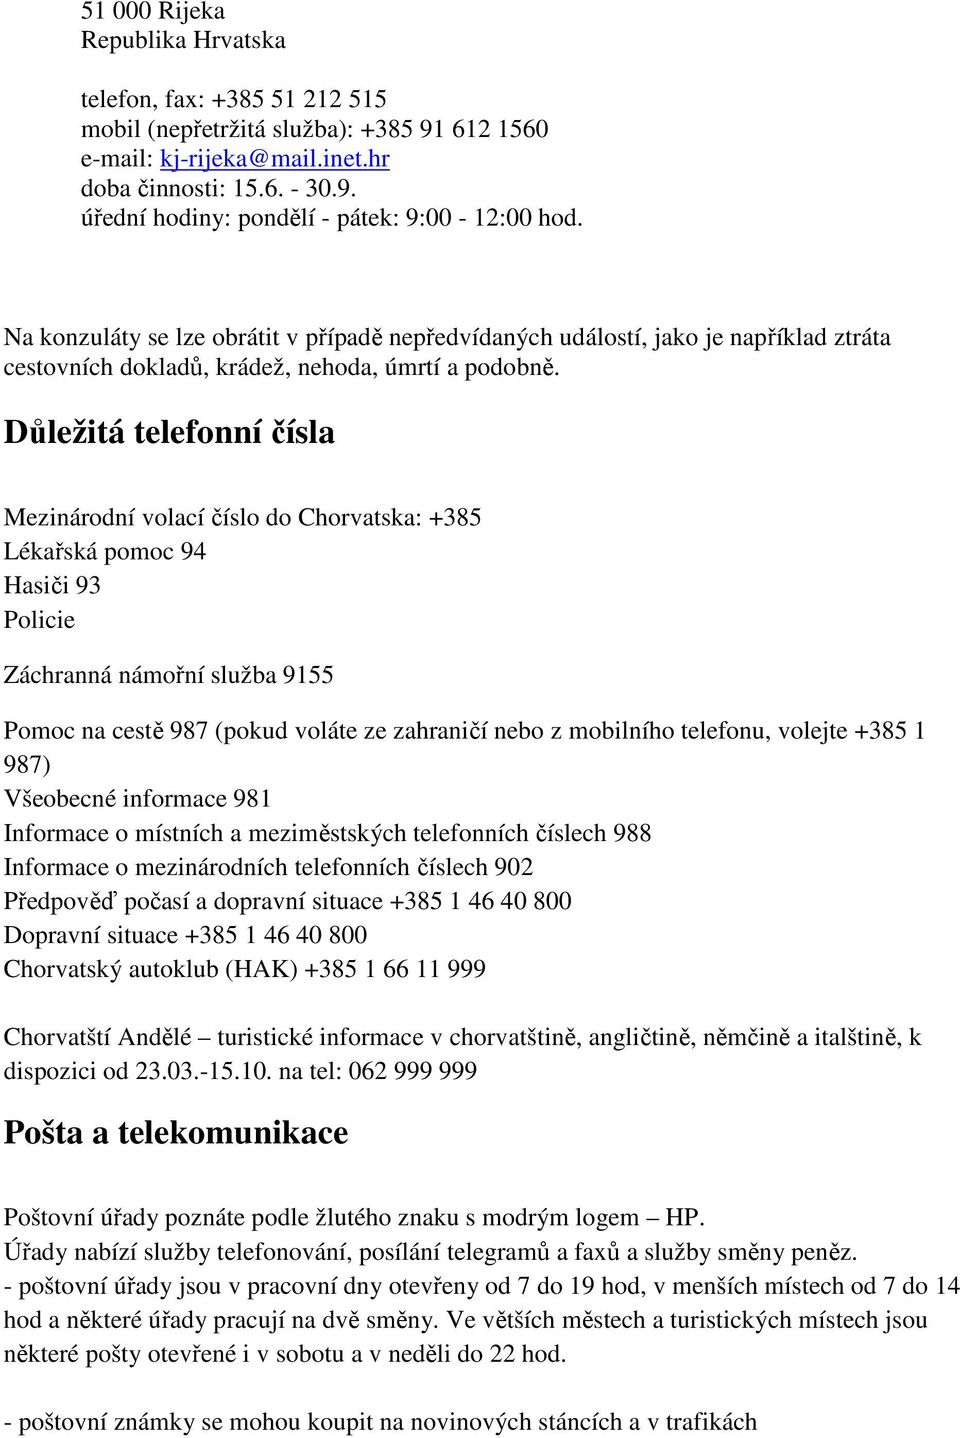 Důležitá telefonní čísla Mezinárodní volací číslo do Chorvatska: +385 Lékařská pomoc 94 Hasiči 93 Policie Záchranná námořní služba 9155 Pomoc na cestě 987 (pokud voláte ze zahraničí nebo z mobilního